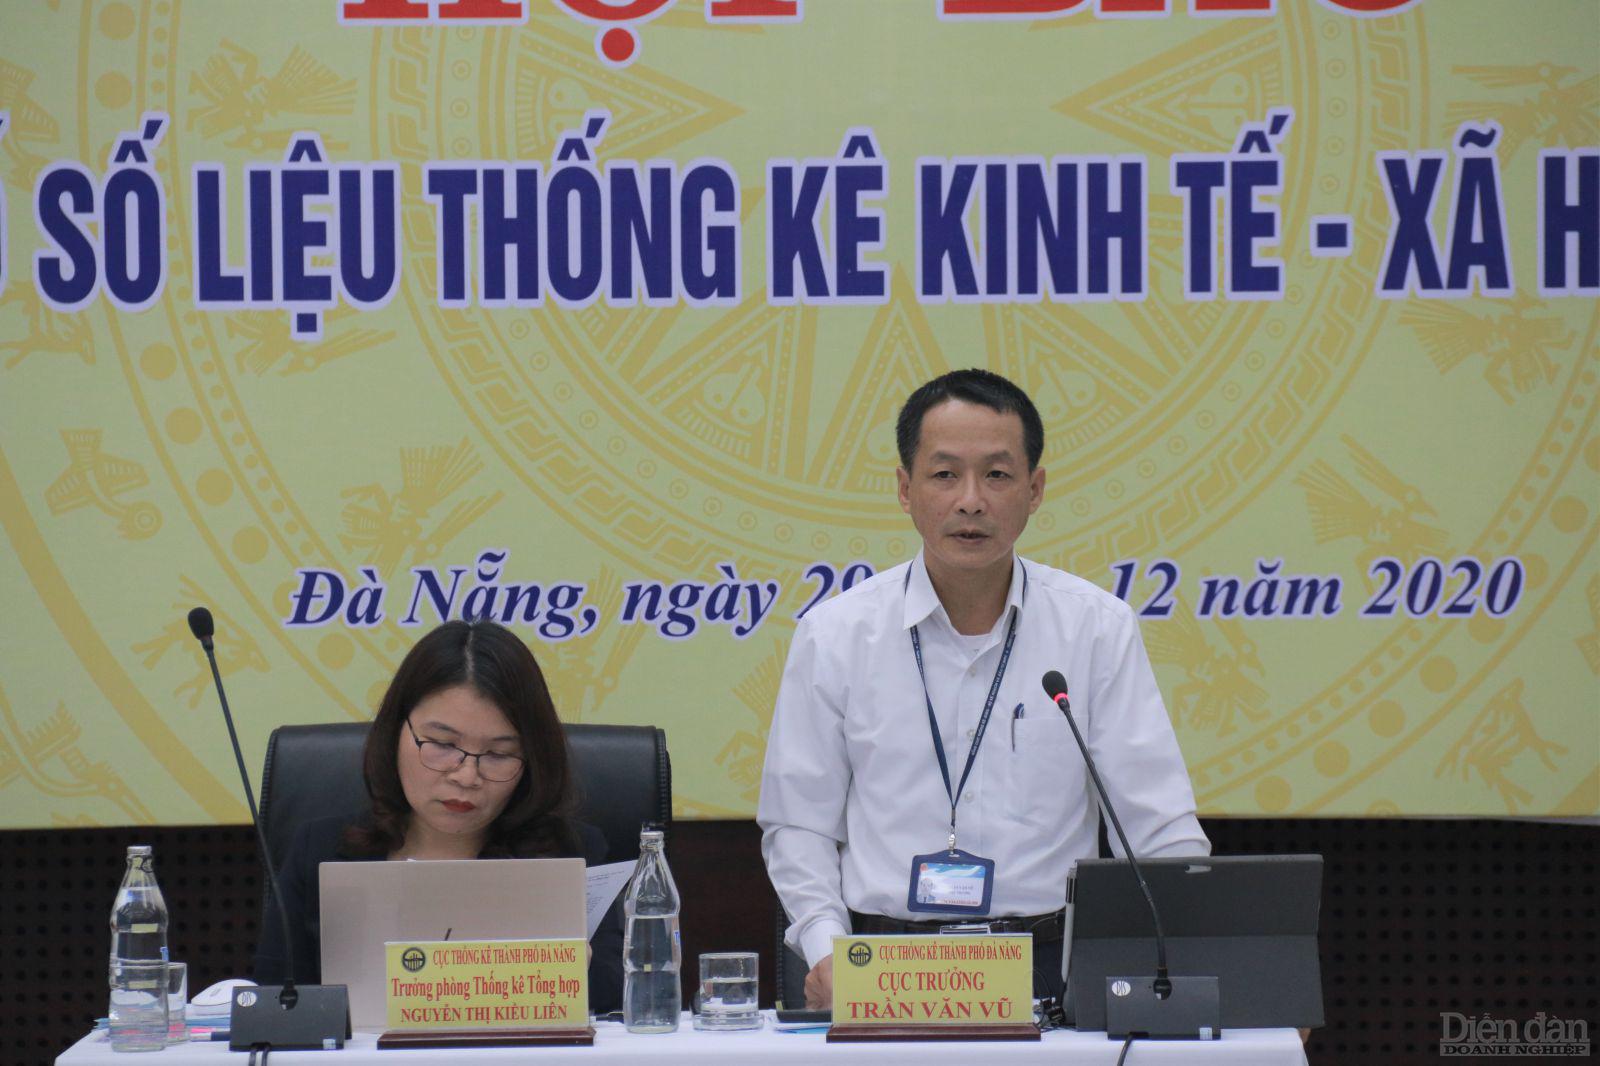 Cục trưởng Cục thông kê Đà Nẵng Trần Văn Vũ đánh giá tỷ lệ thất nghiệp tại Đà Nẵng cao nhất trong 10 năm qua.